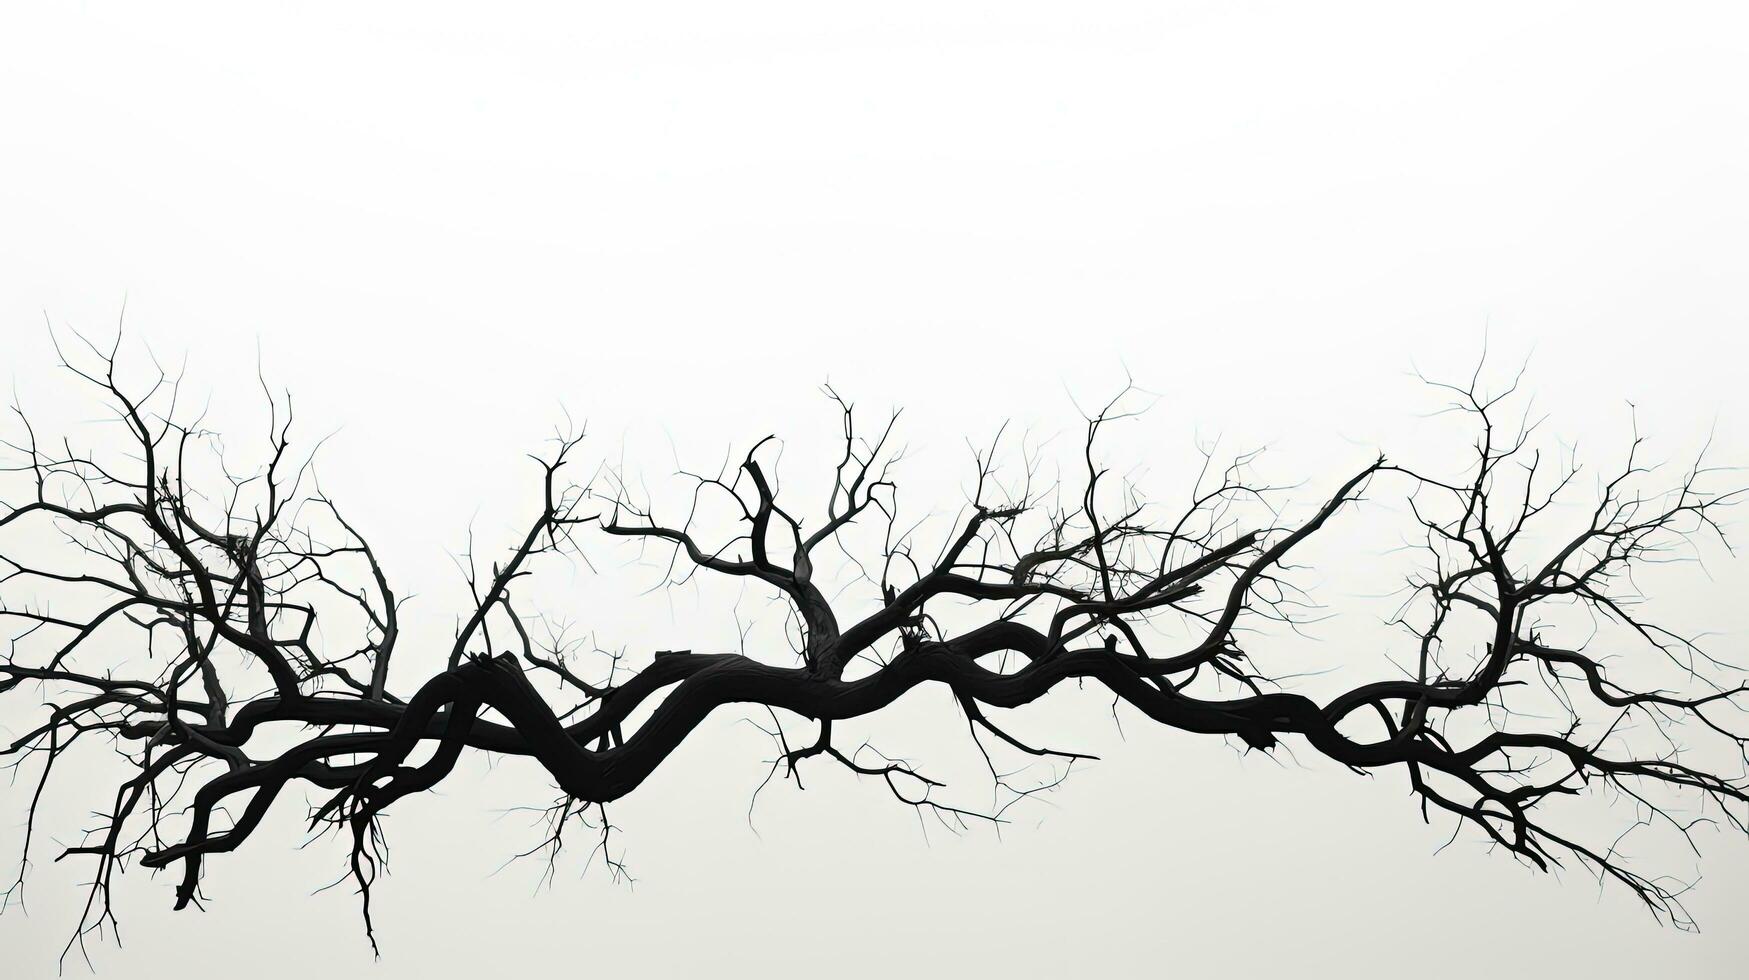 muerto árbol silueta en blanco fondo foto